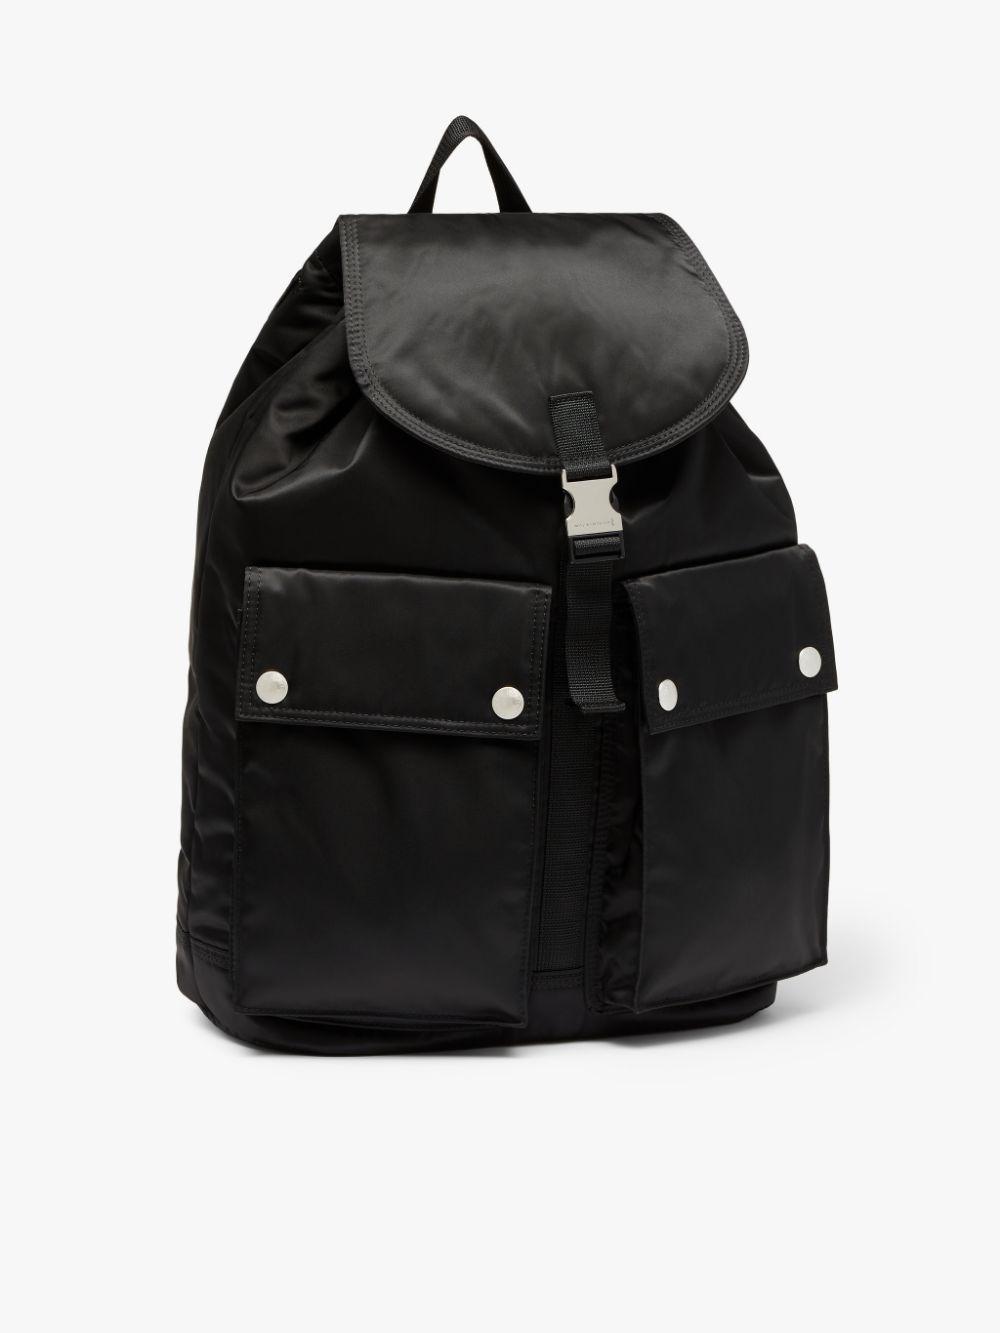 Porter Nylon Backpack in Black for Men - Lyst